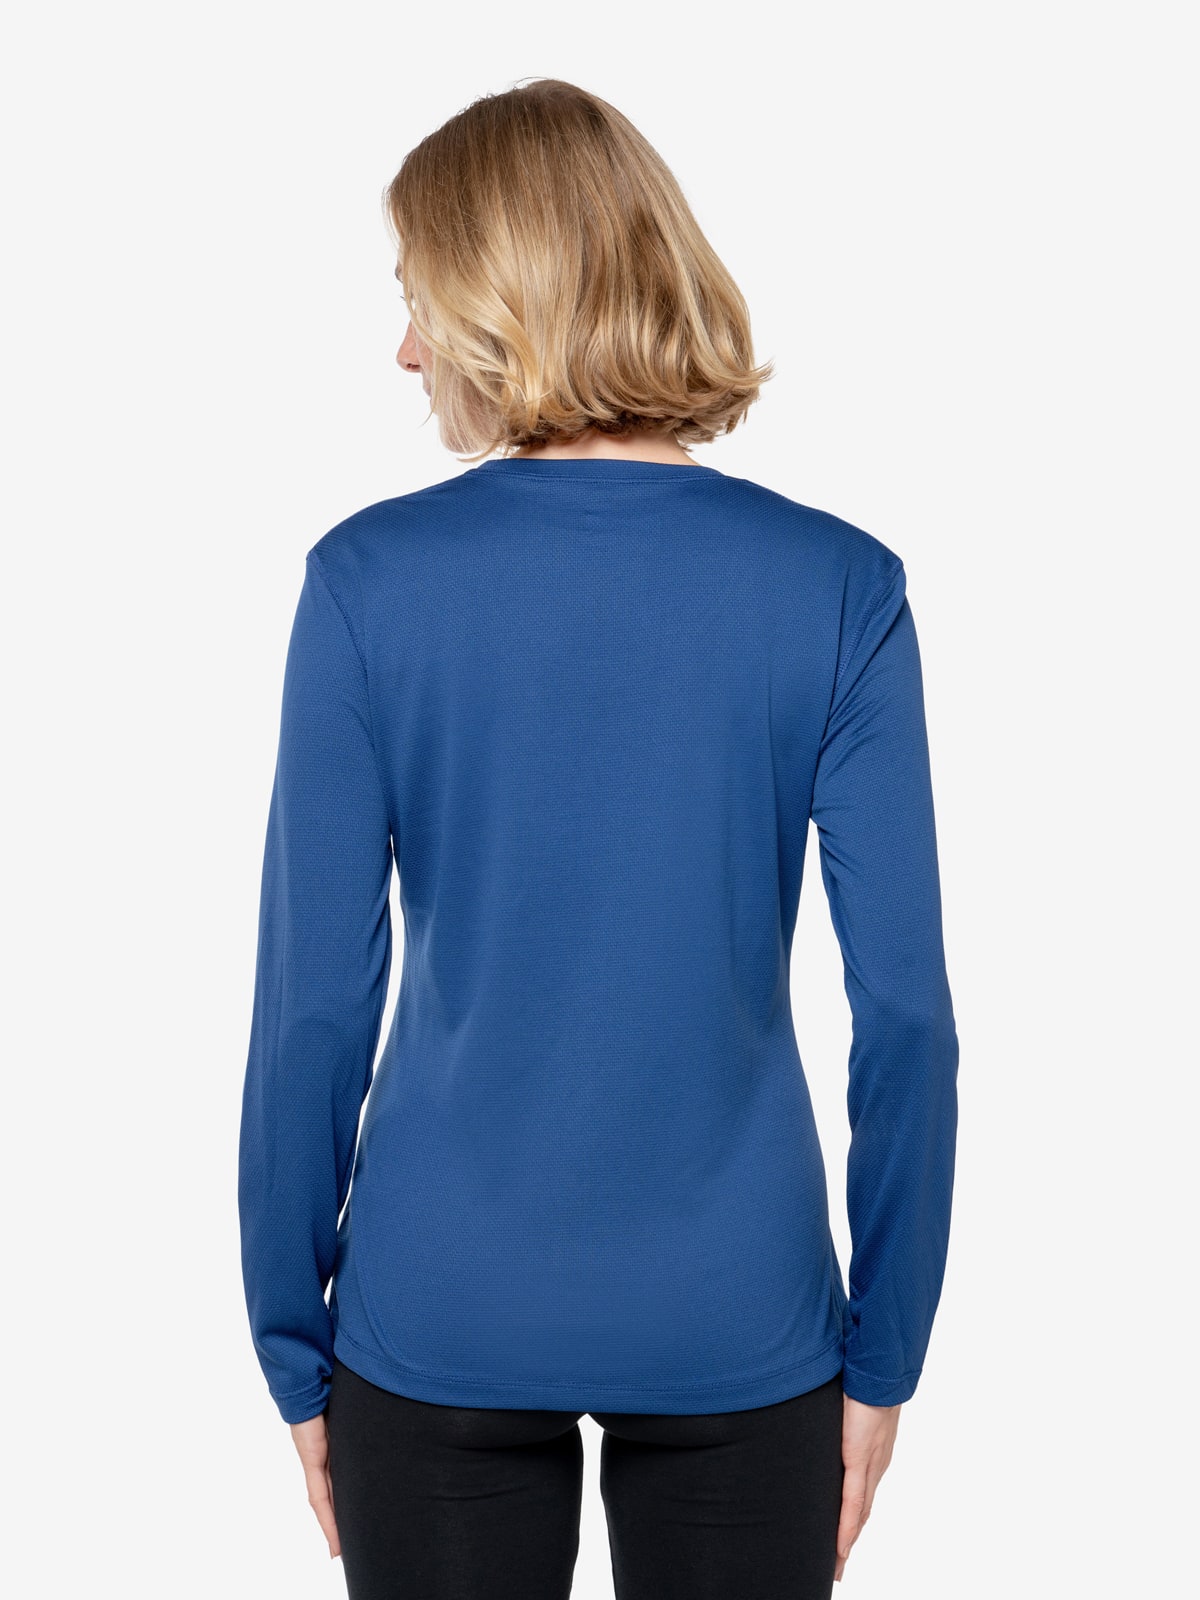 Insect Shield Women's Long Sleeve Tech T-Shirt